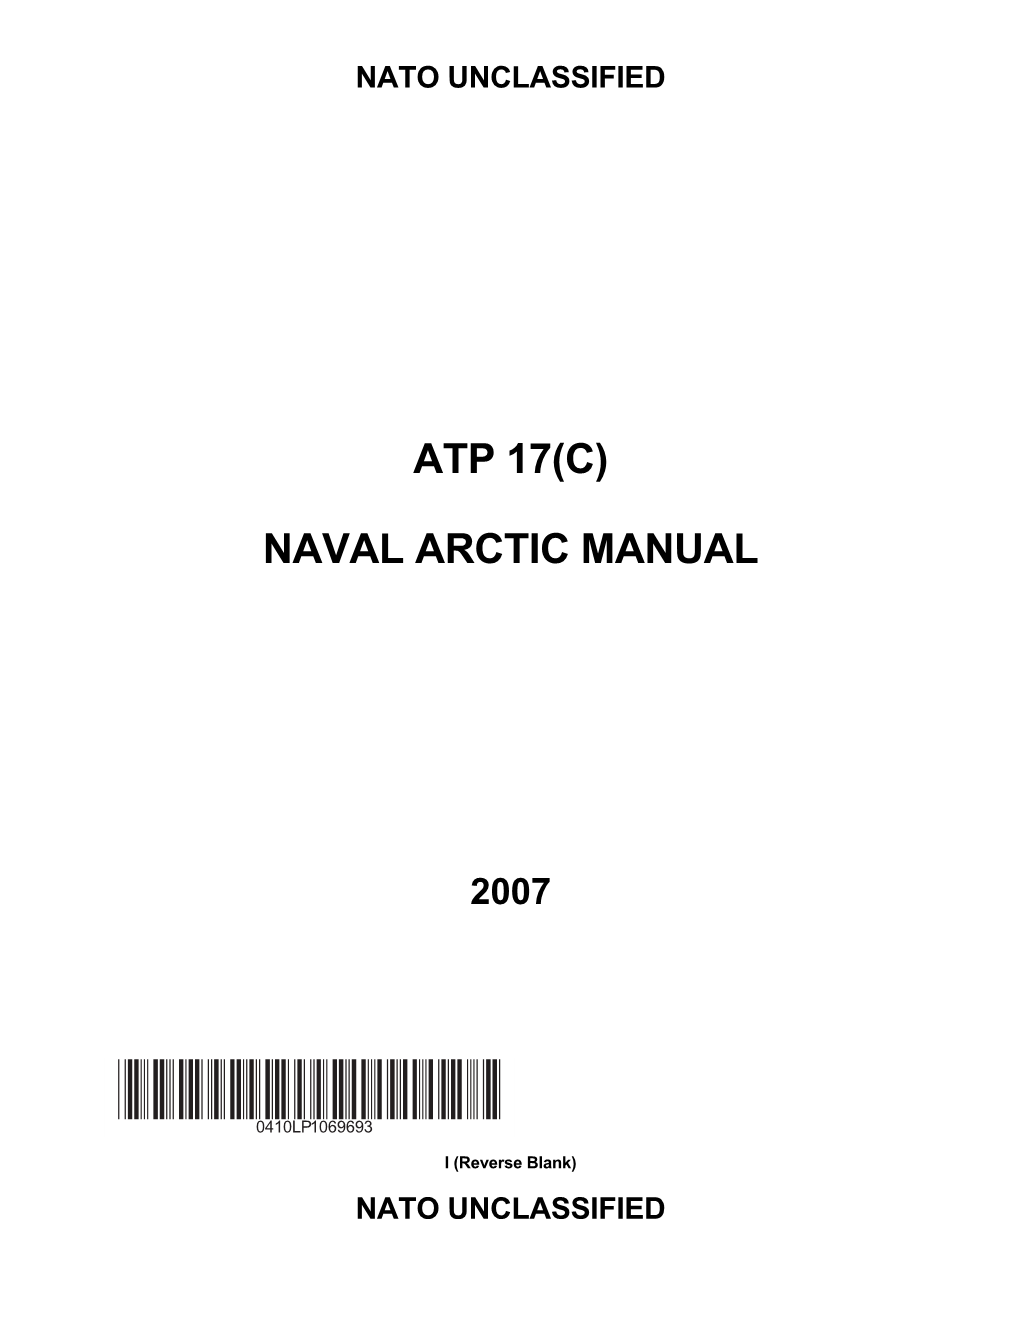 Naval Arctic Manual